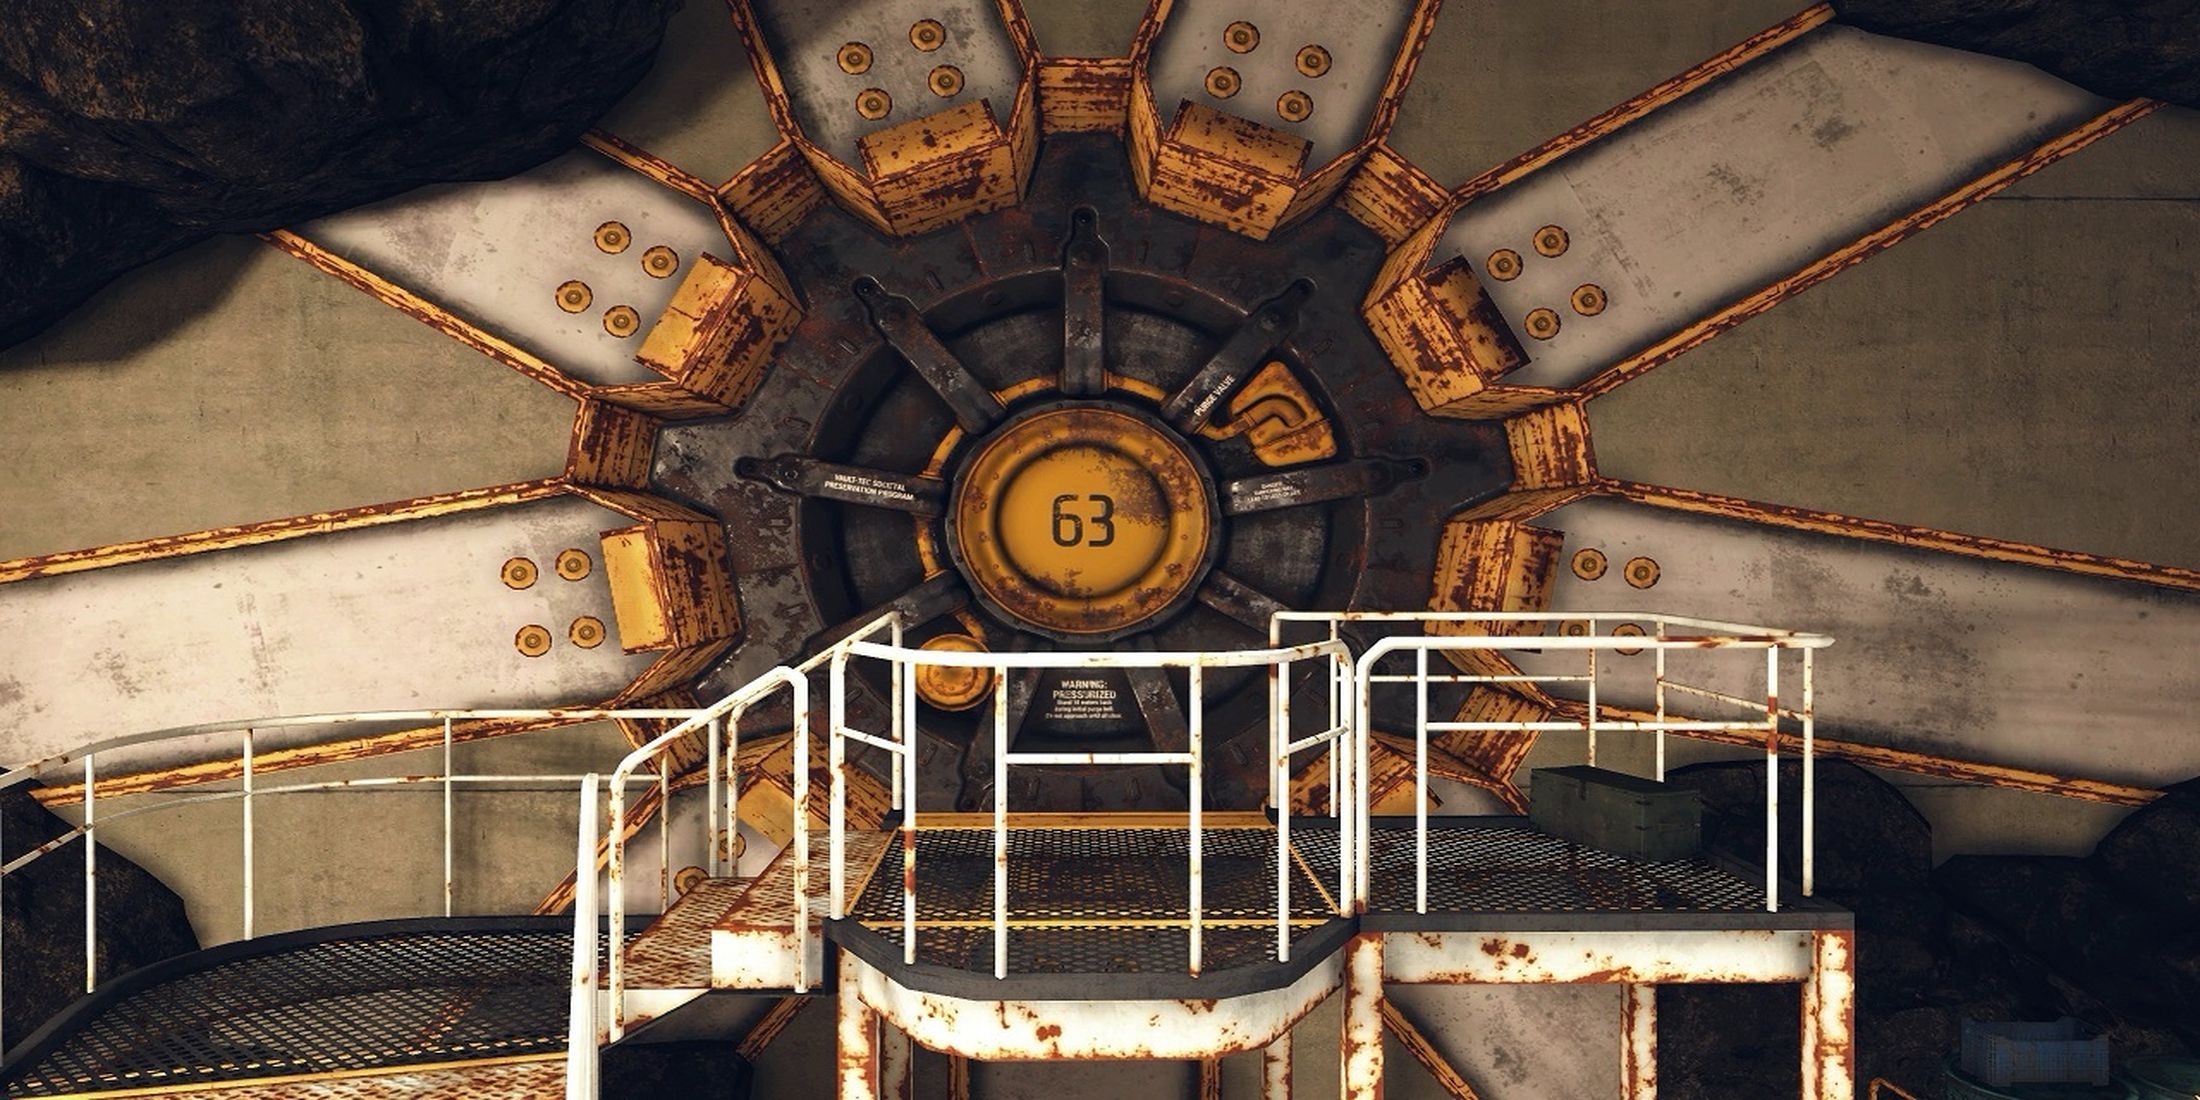 Fallout 76 Vault 63